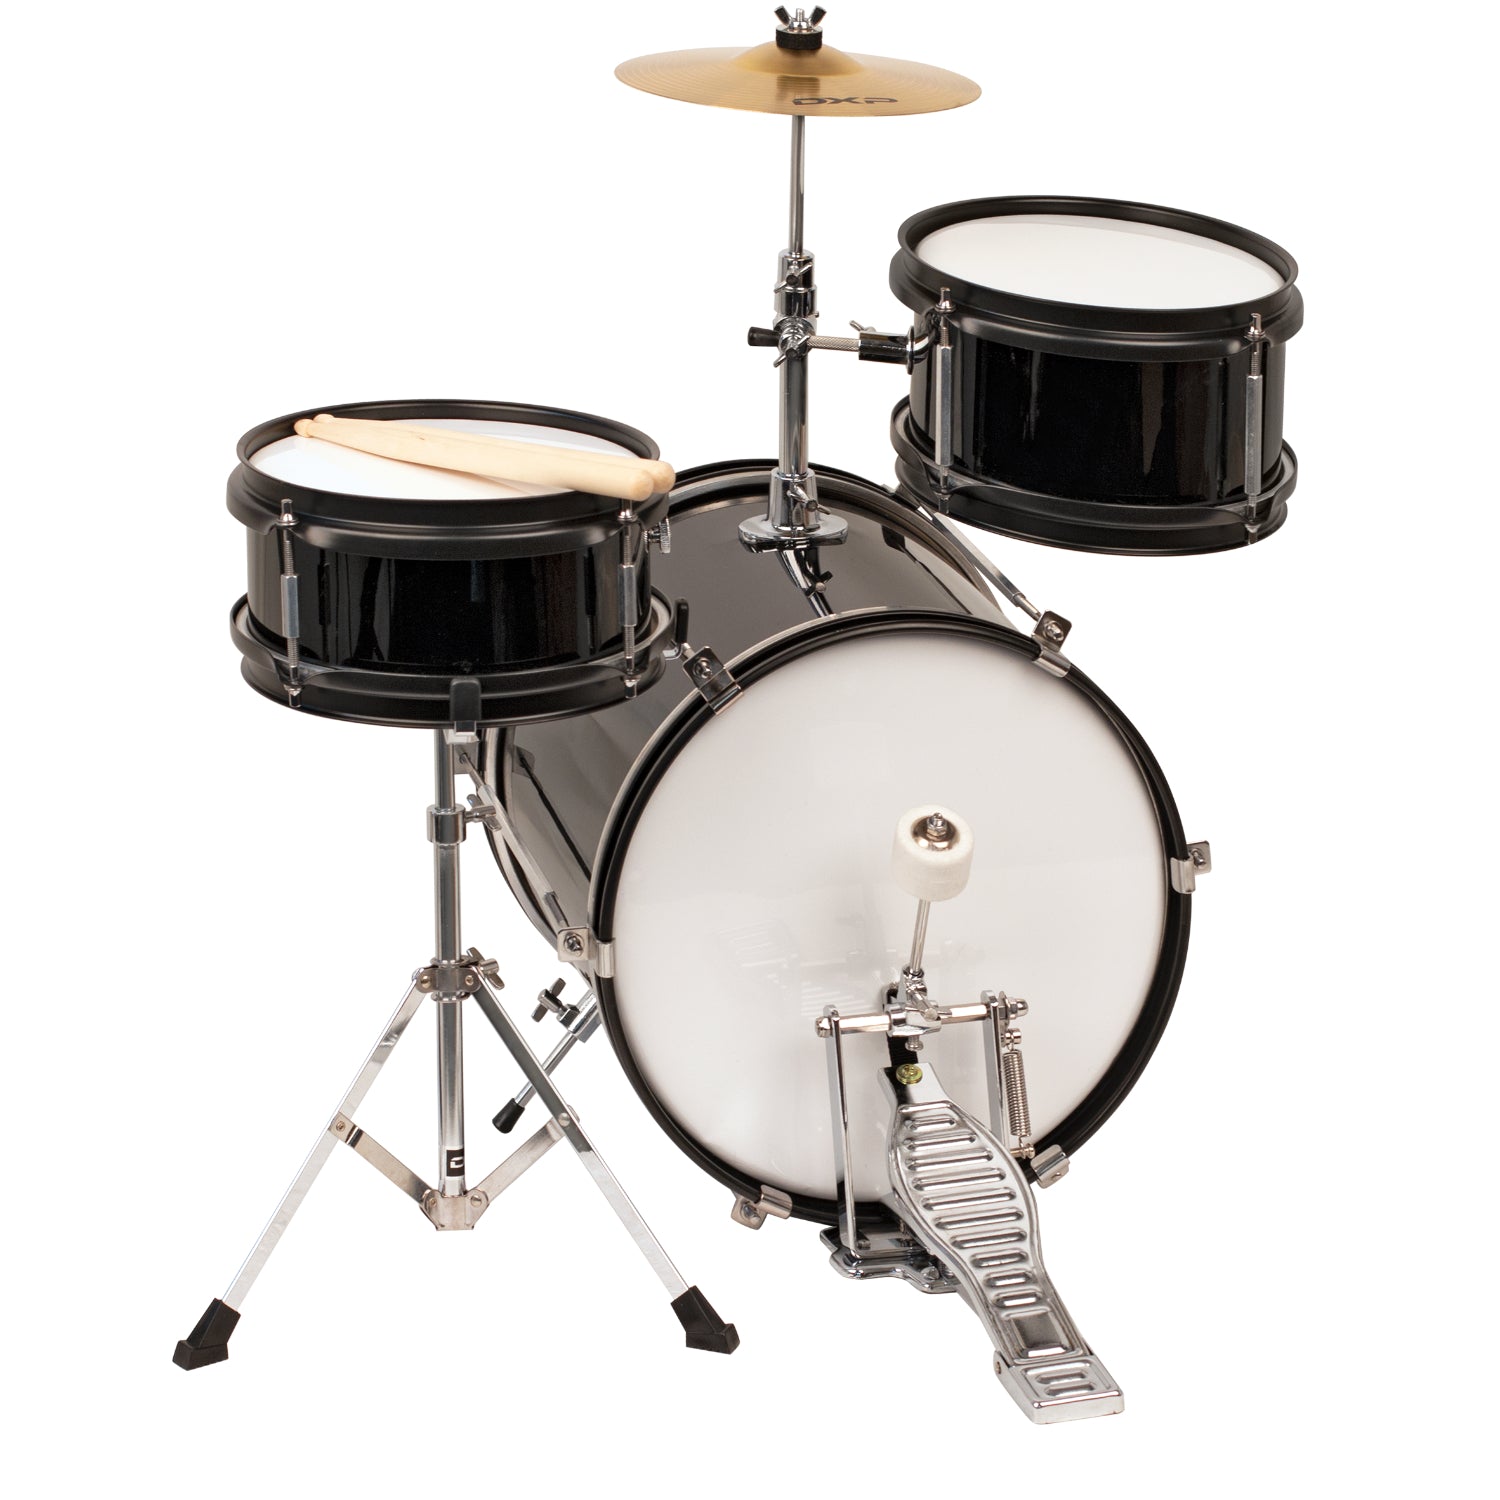 DXP 3-Piece Junior Drum Kit